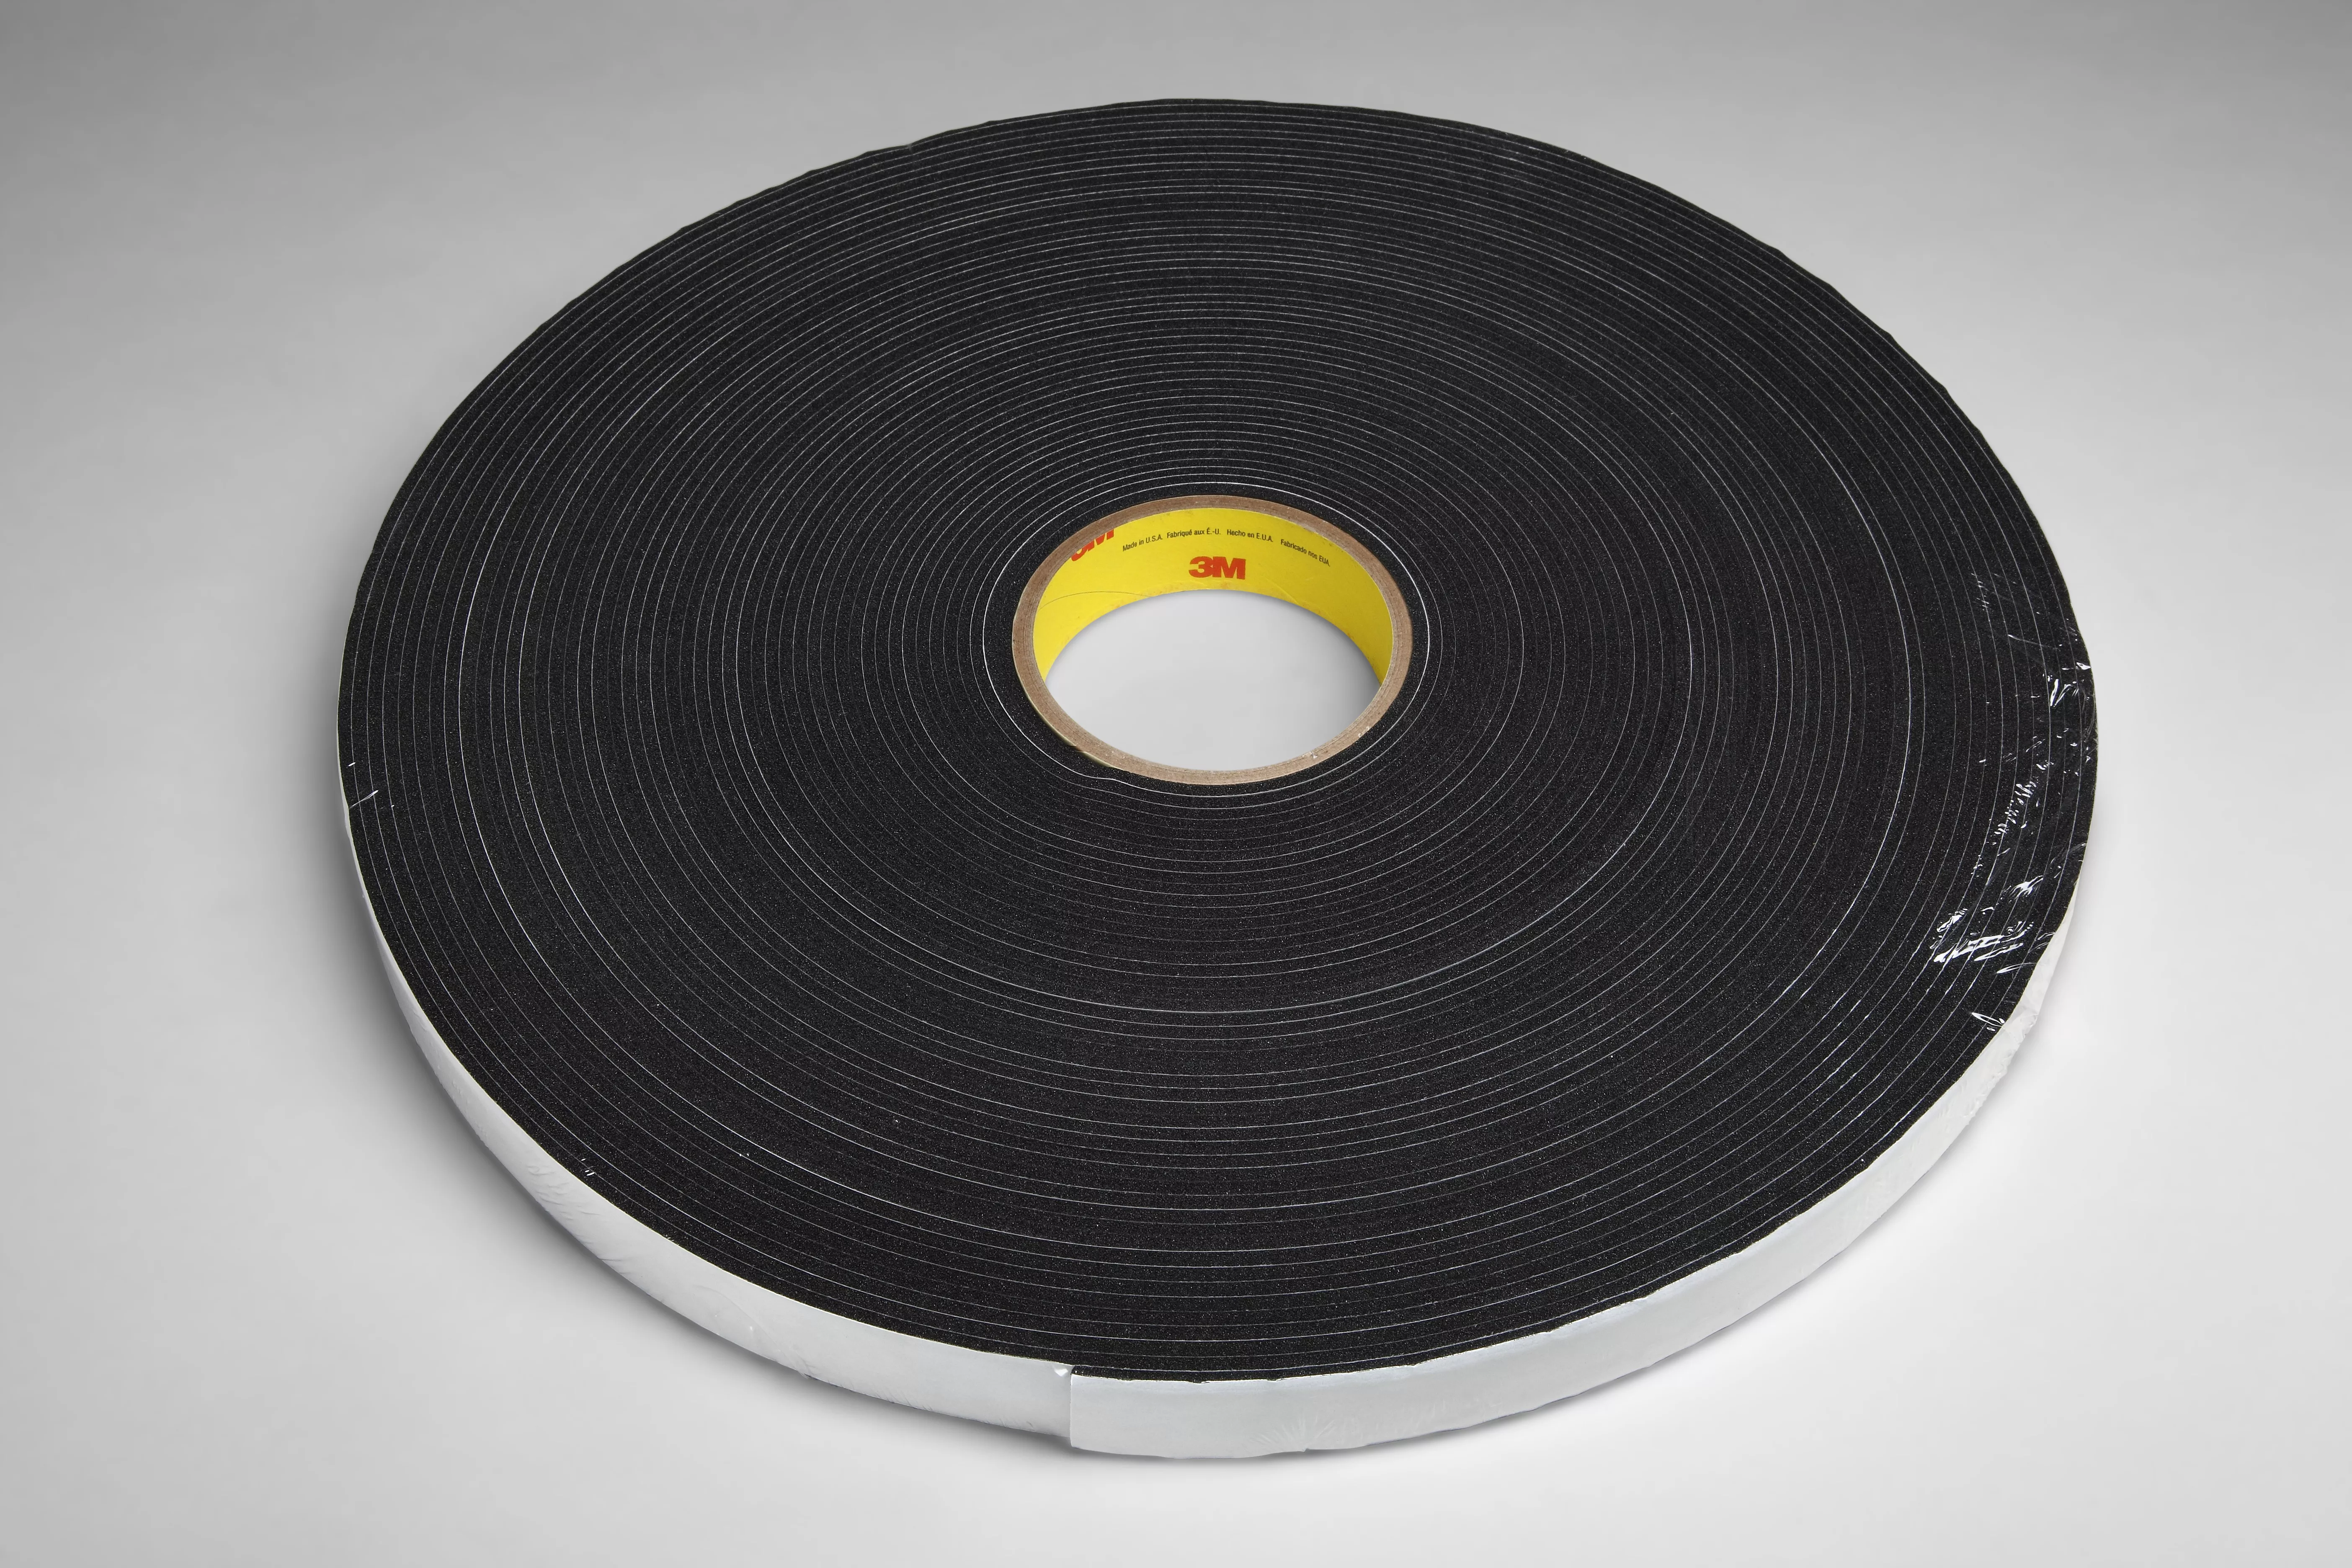 3M™ Vinyl Foam Tape 4718, Black, 2 in x 36 yd, 125 mil, 6 Roll/Case